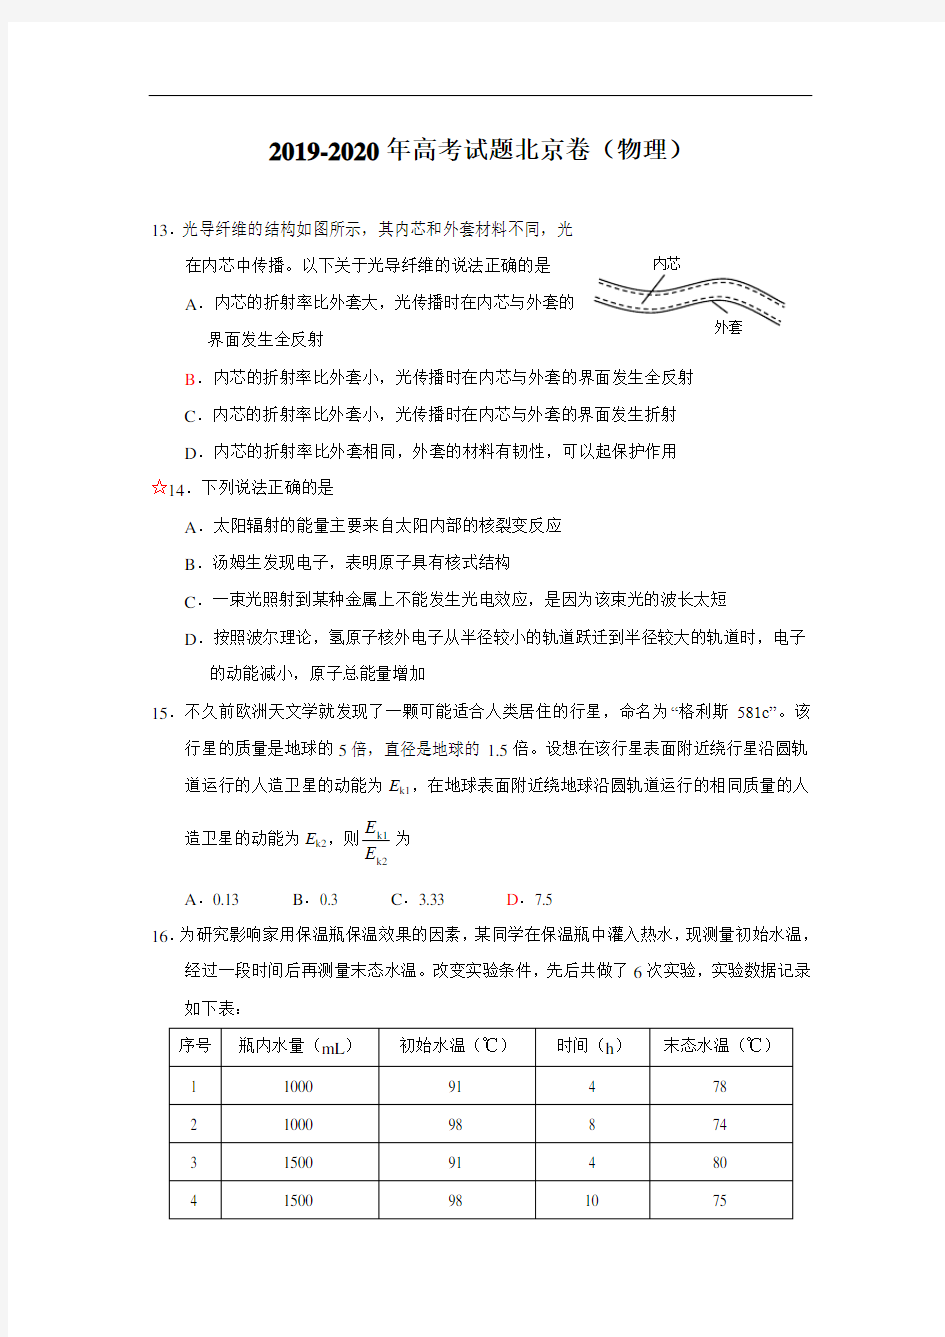 2019-2020年高考试题北京卷(物理)